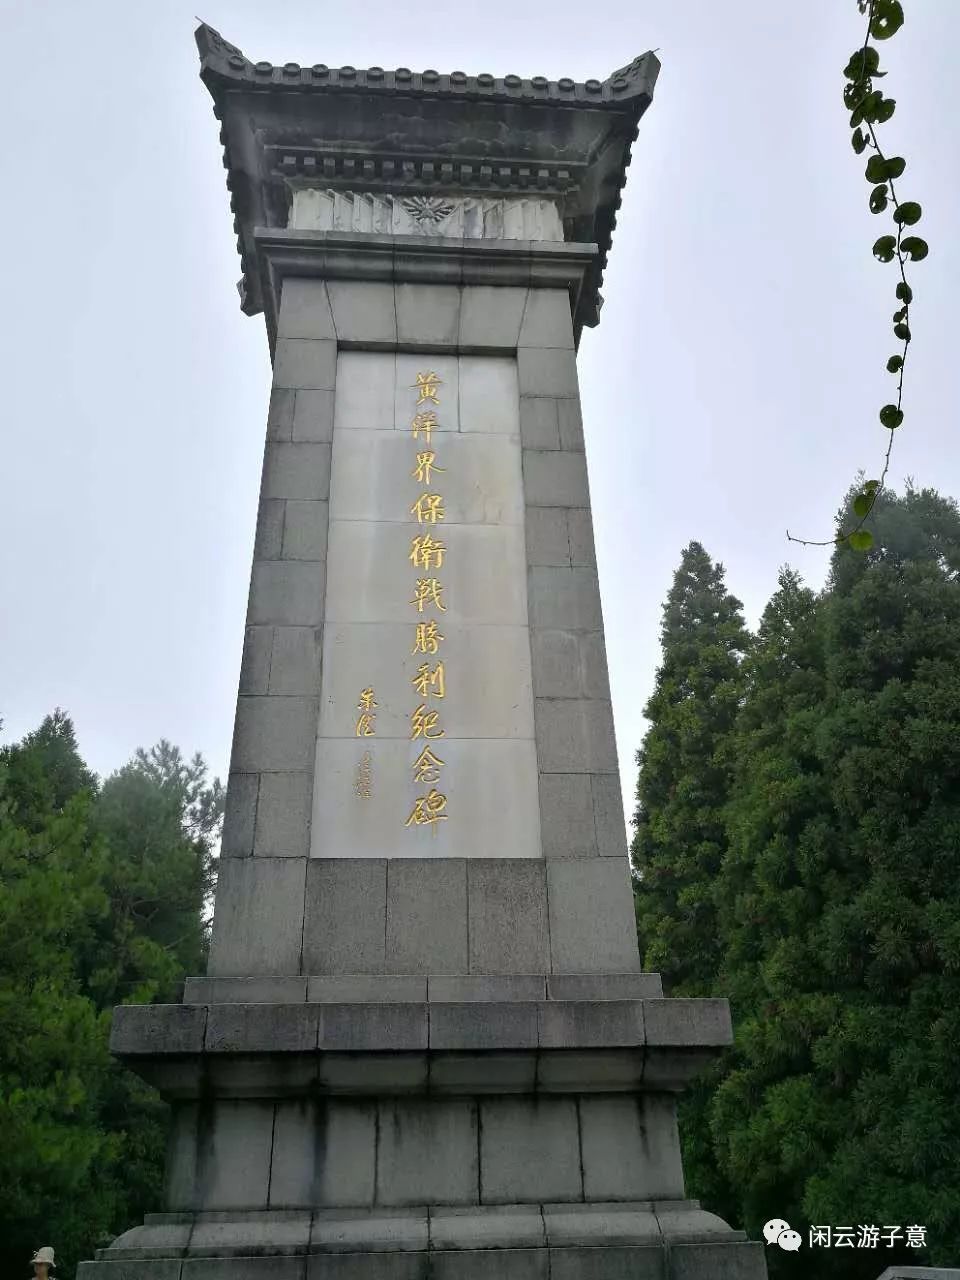 1960年10月,井冈山人民在黄洋界建造了一座纪念碑,木质结构